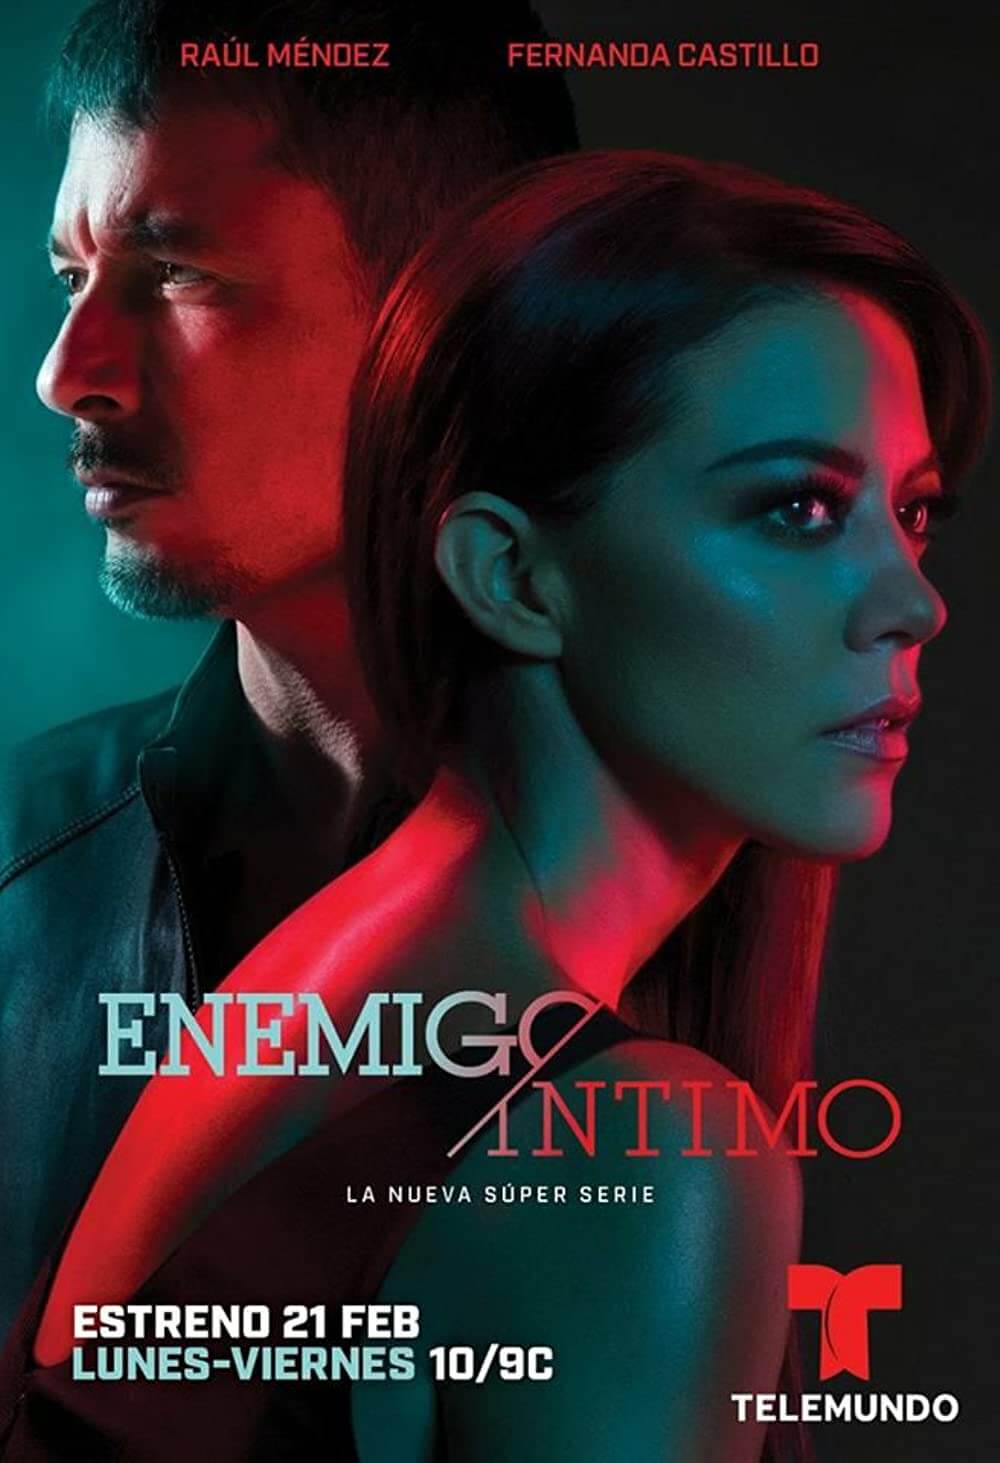 Enemigo-Intimo-telemundo-movies